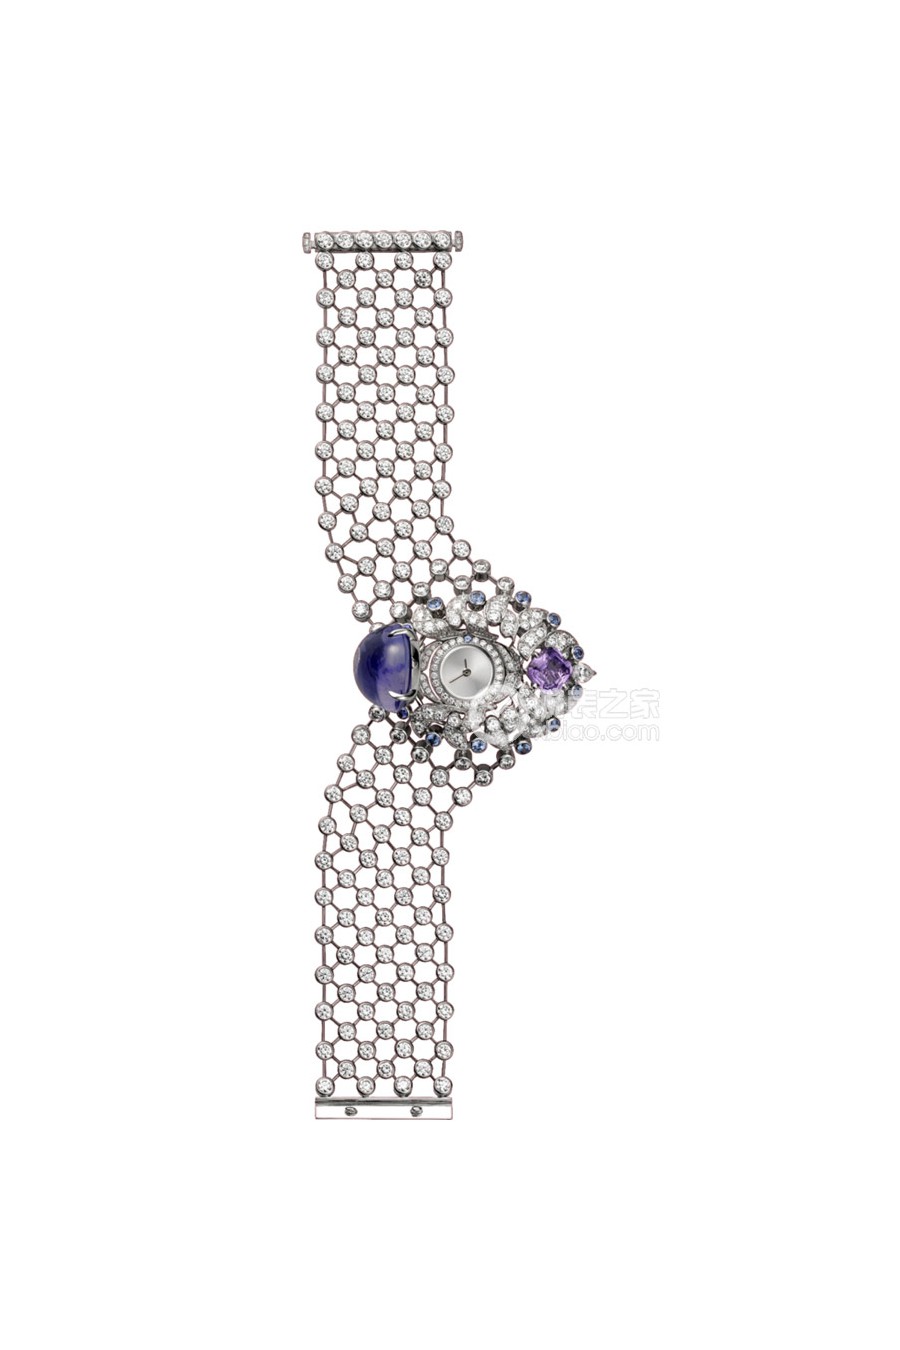 卡地亚创意宝石腕表系列HPI00572